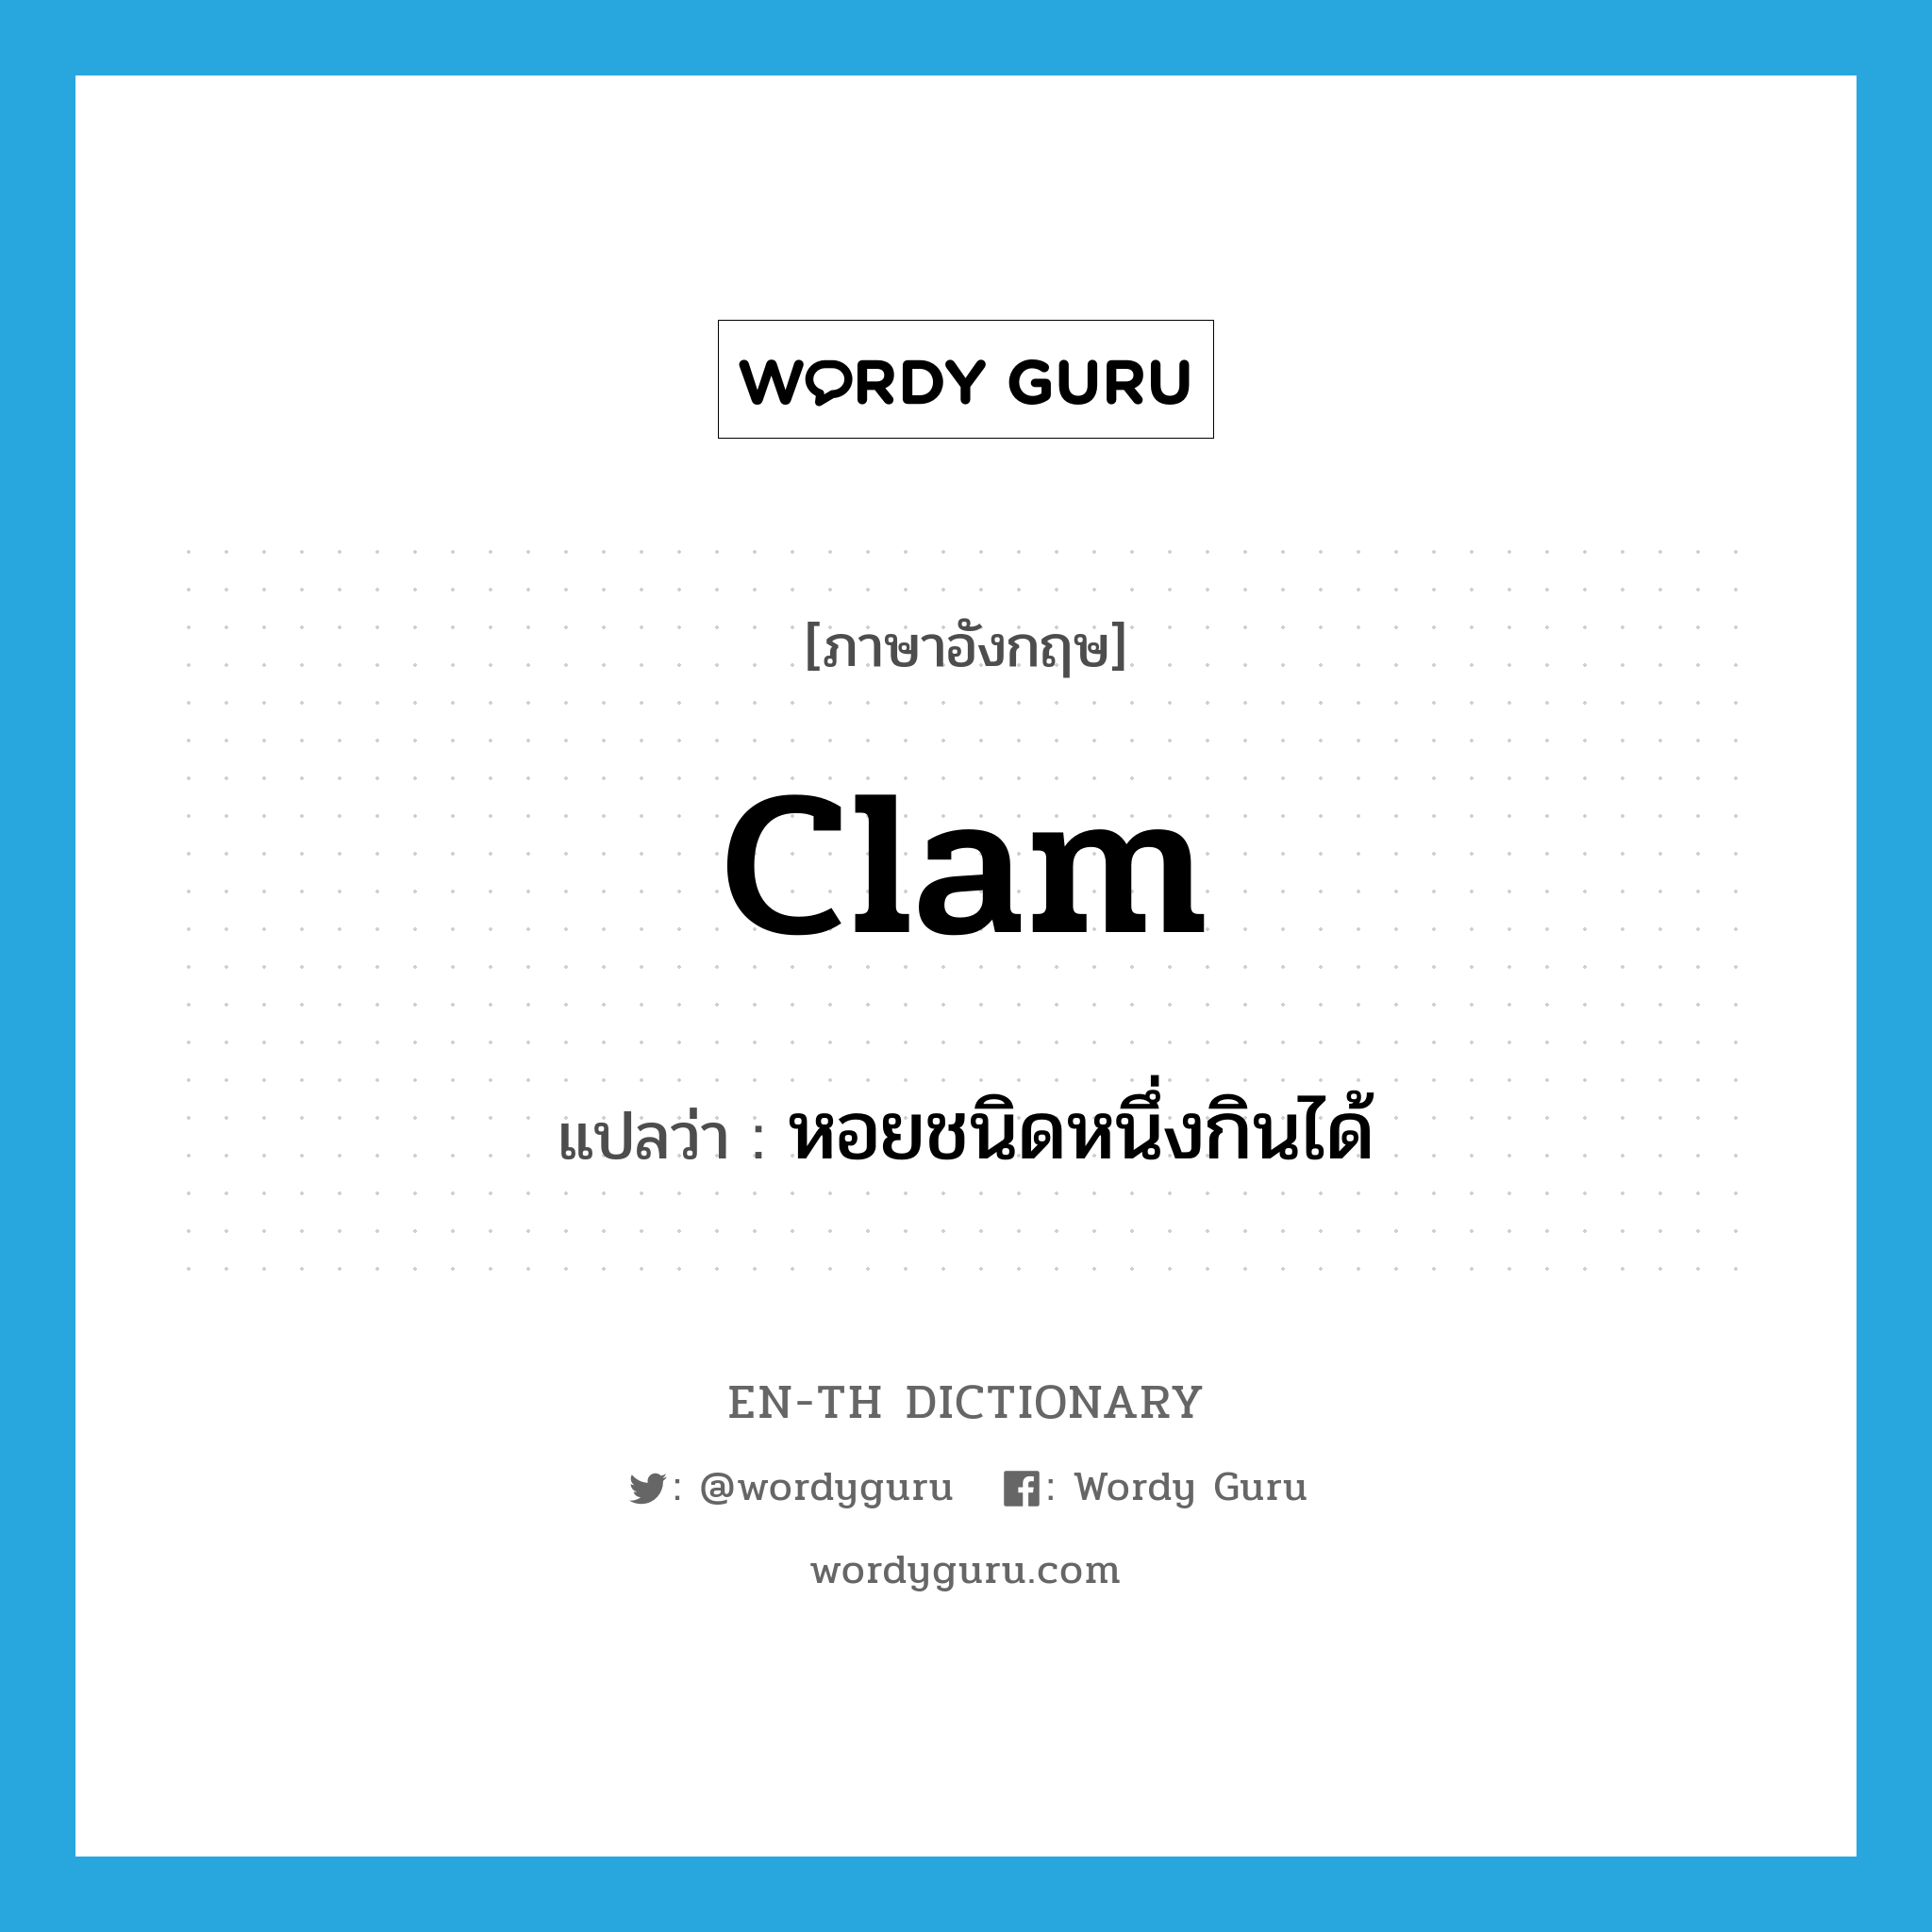 clam แปลว่า?, คำศัพท์ภาษาอังกฤษ clam แปลว่า หอยชนิดหนึ่งกินได้ ประเภท N หมวด N